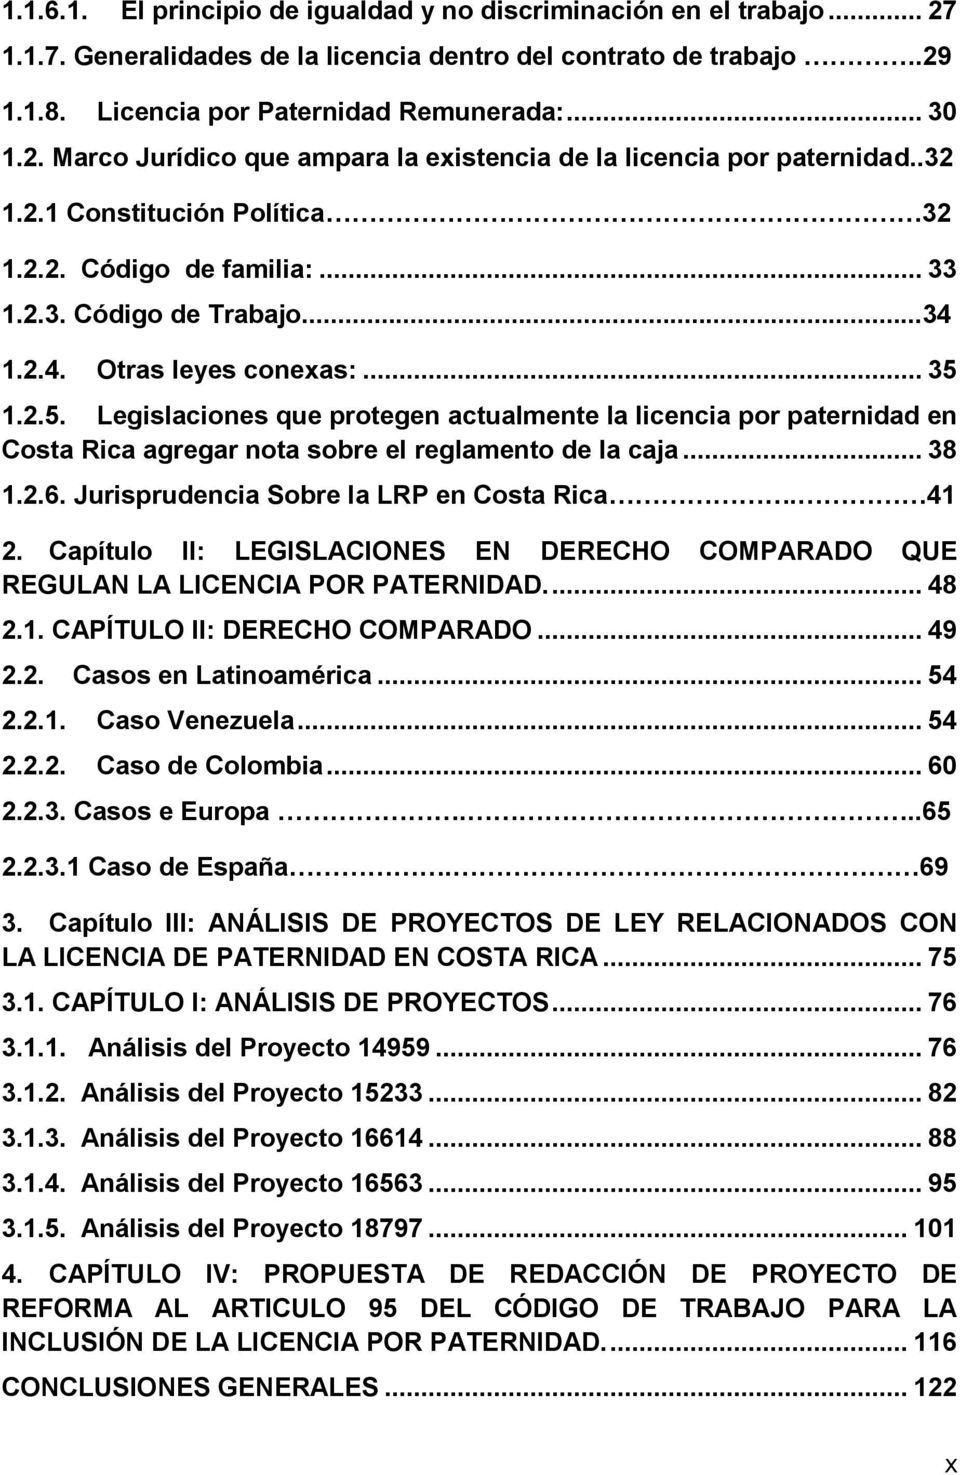 1.2.5. Legislaciones que protegen actualmente la licencia por paternidad en Costa Rica agregar nota sobre el reglamento de la caja... 38 1.2.6. Jurisprudencia Sobre la LRP en Costa Rica. 41 2.